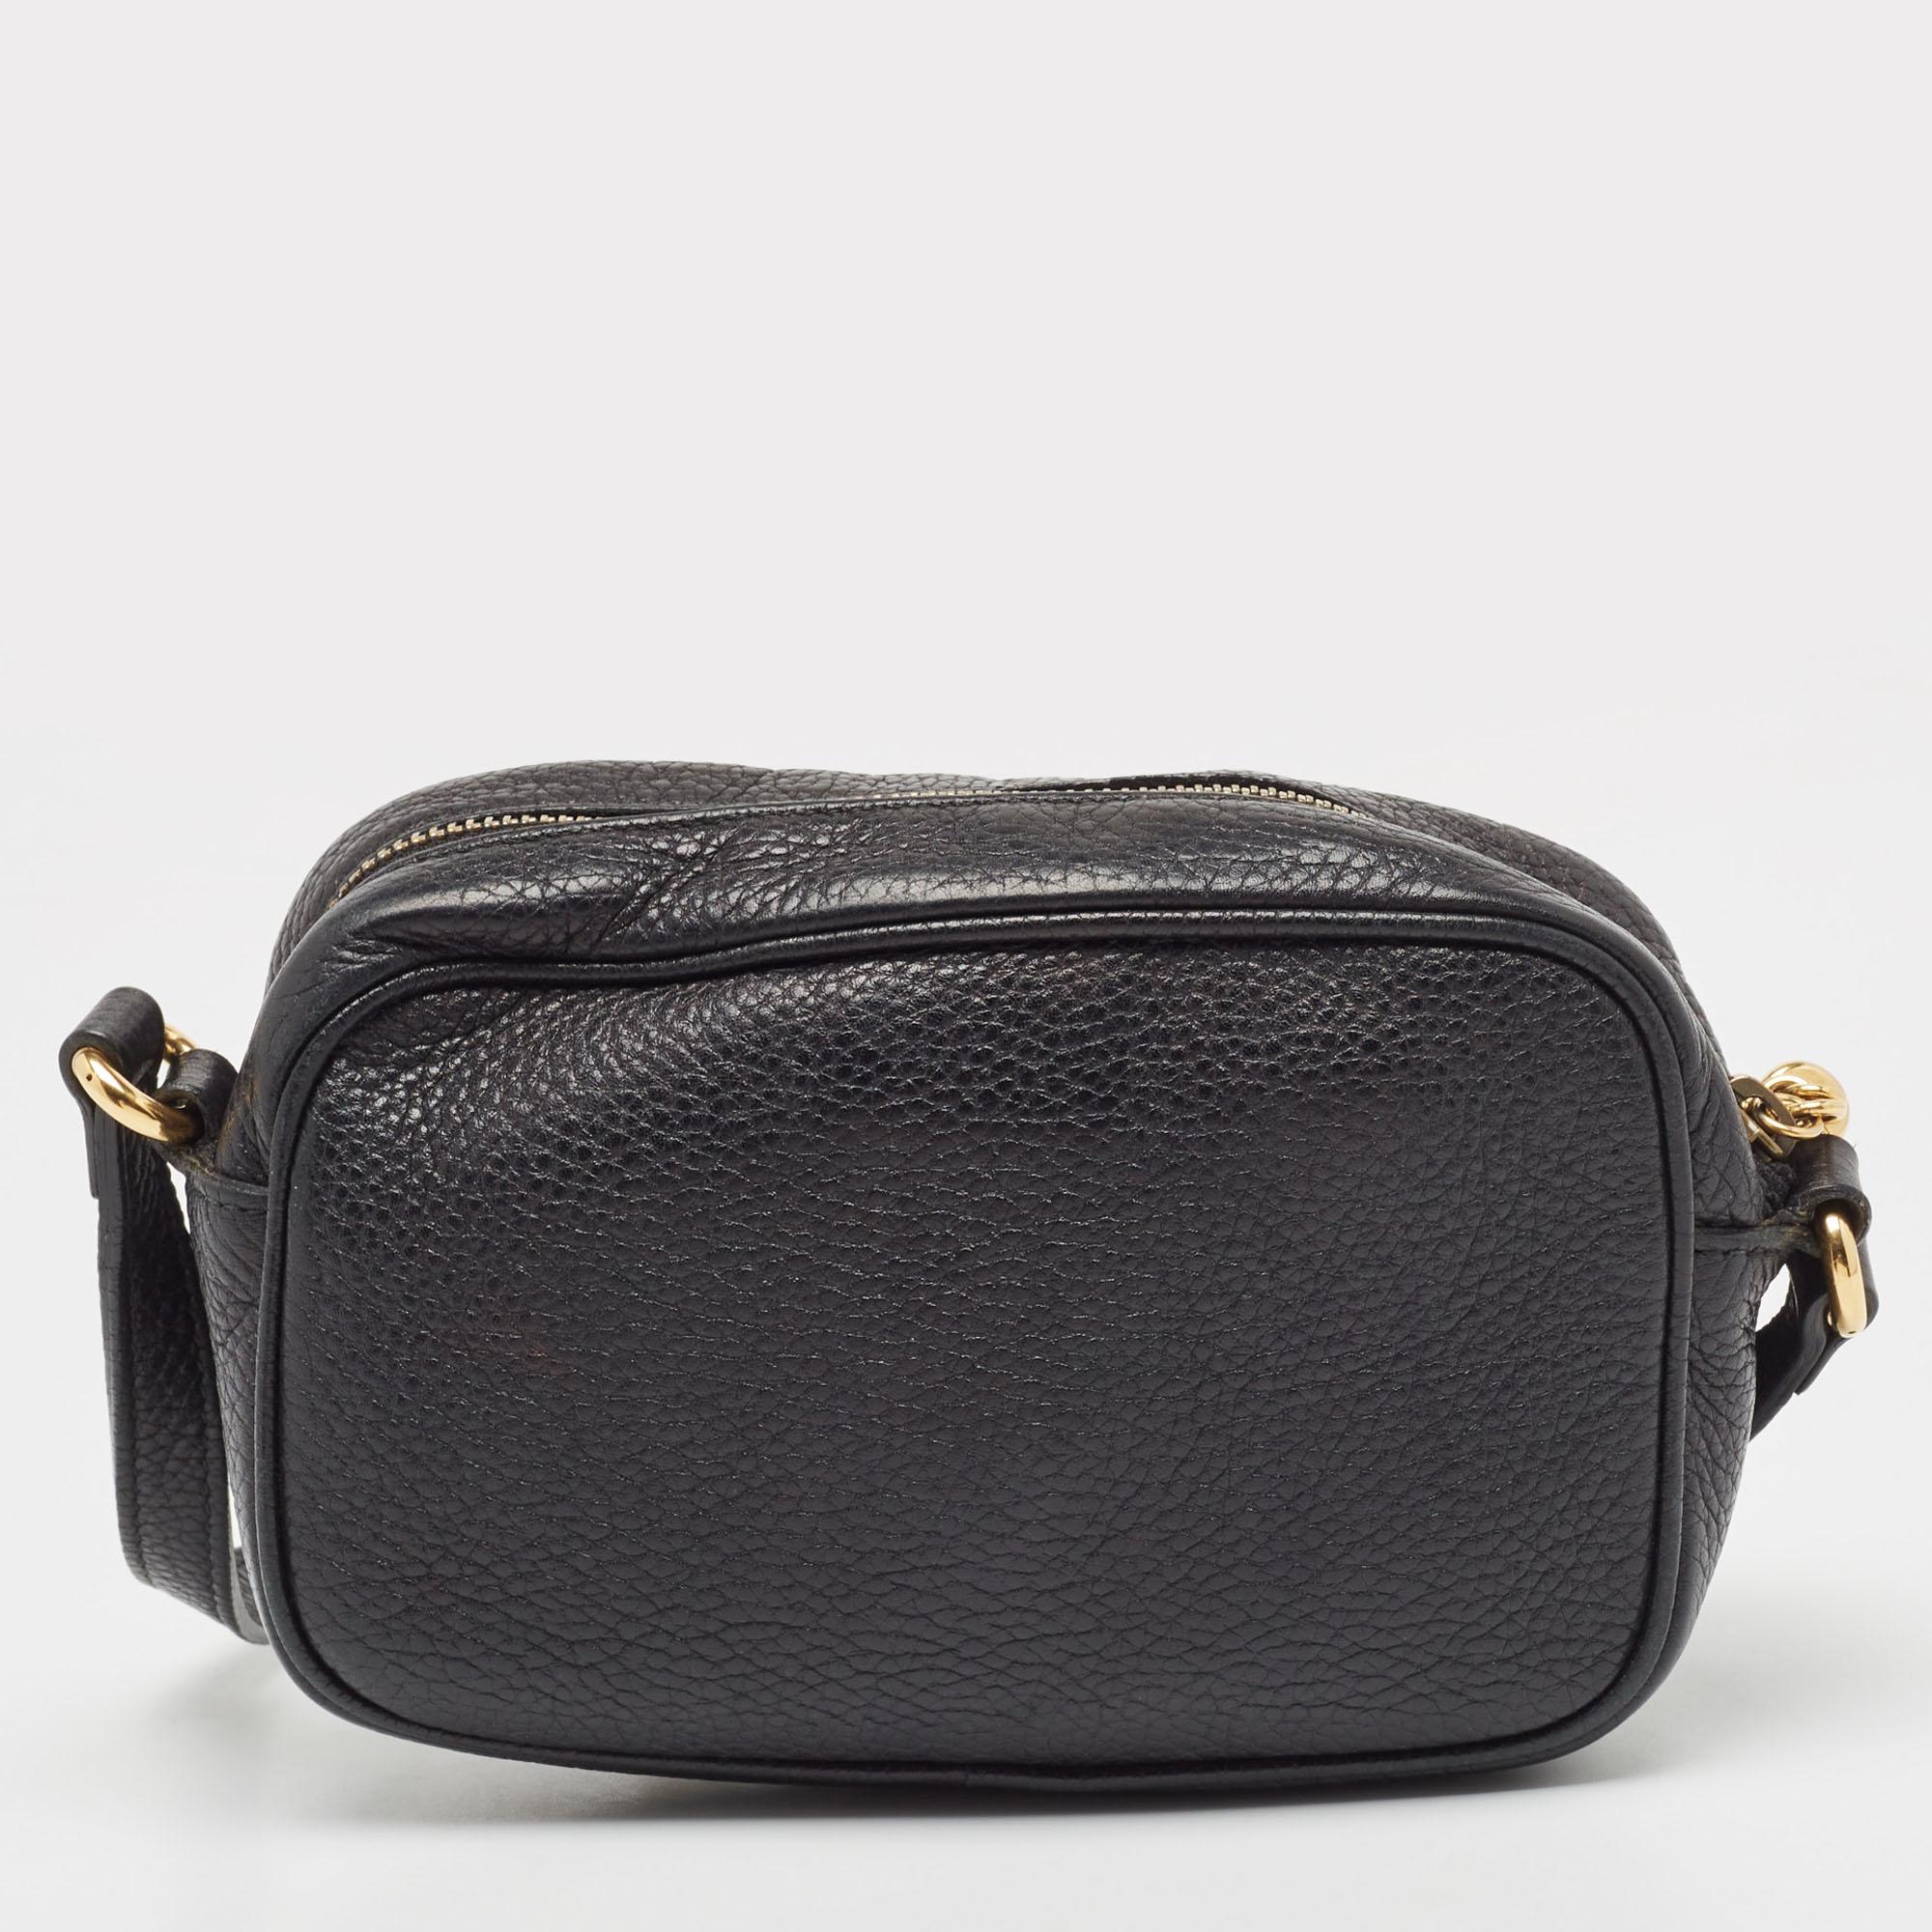 L'expertise de Gucci dans la création de designs remarquables est évidente dans ce sac SOHO. Confectionné en cuir, il est rehaussé d'un motif de marque sur le devant et doté d'une bandoulière. La fermeture à glissière sur le dessus est équipée d'un